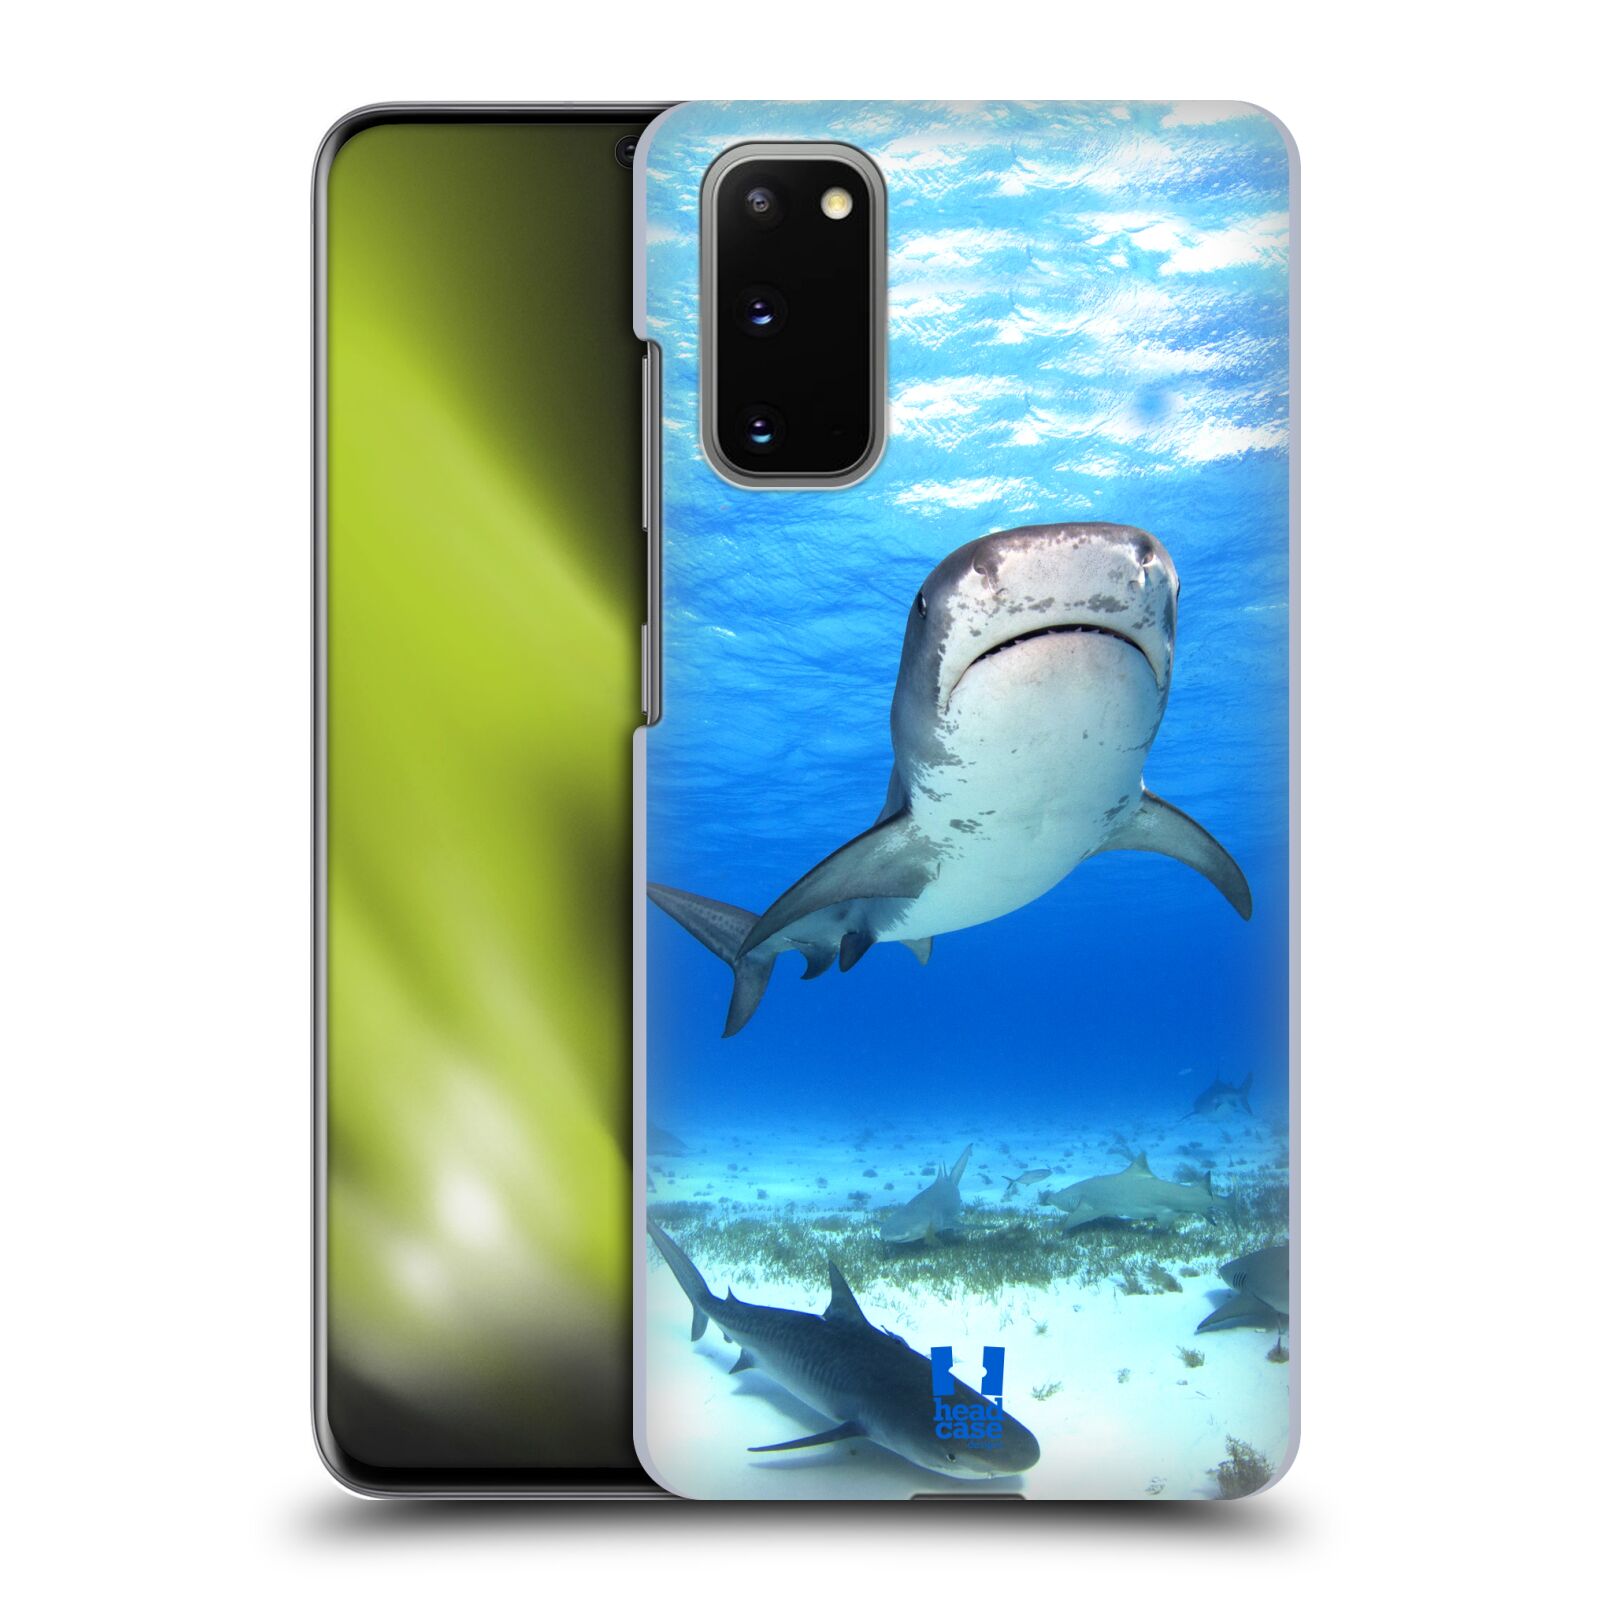 Pouzdro na mobil Samsung Galaxy S20 - HEAD CASE - vzor slavná zvířata foto žralok tygří